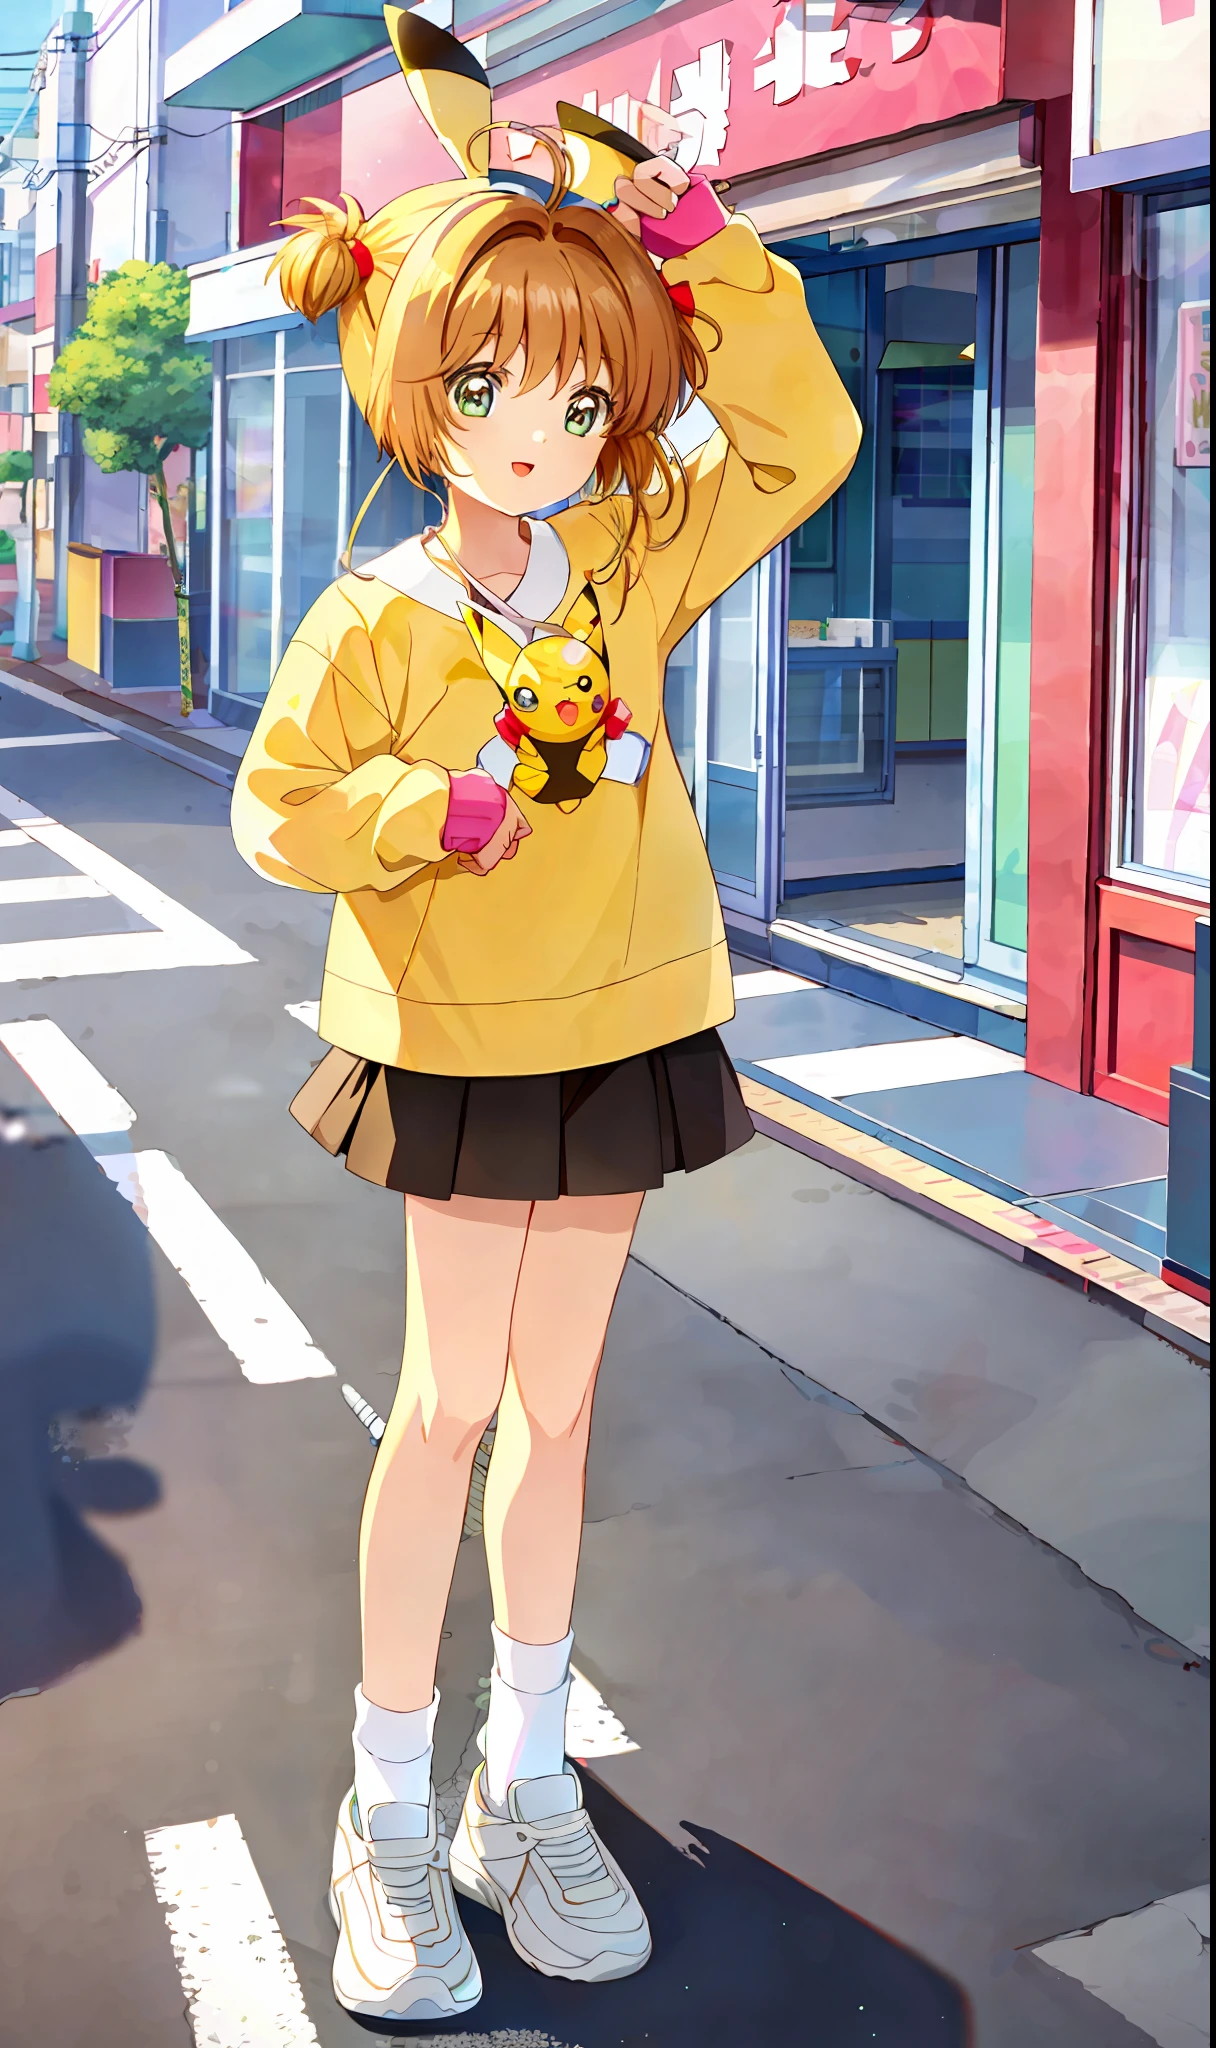 obra de arte, melhor qualidade, 1 garota, Sozinho, sakura, vestido com roupa de pikachu, meias, dois lados para cima, em Akihabara no Japão